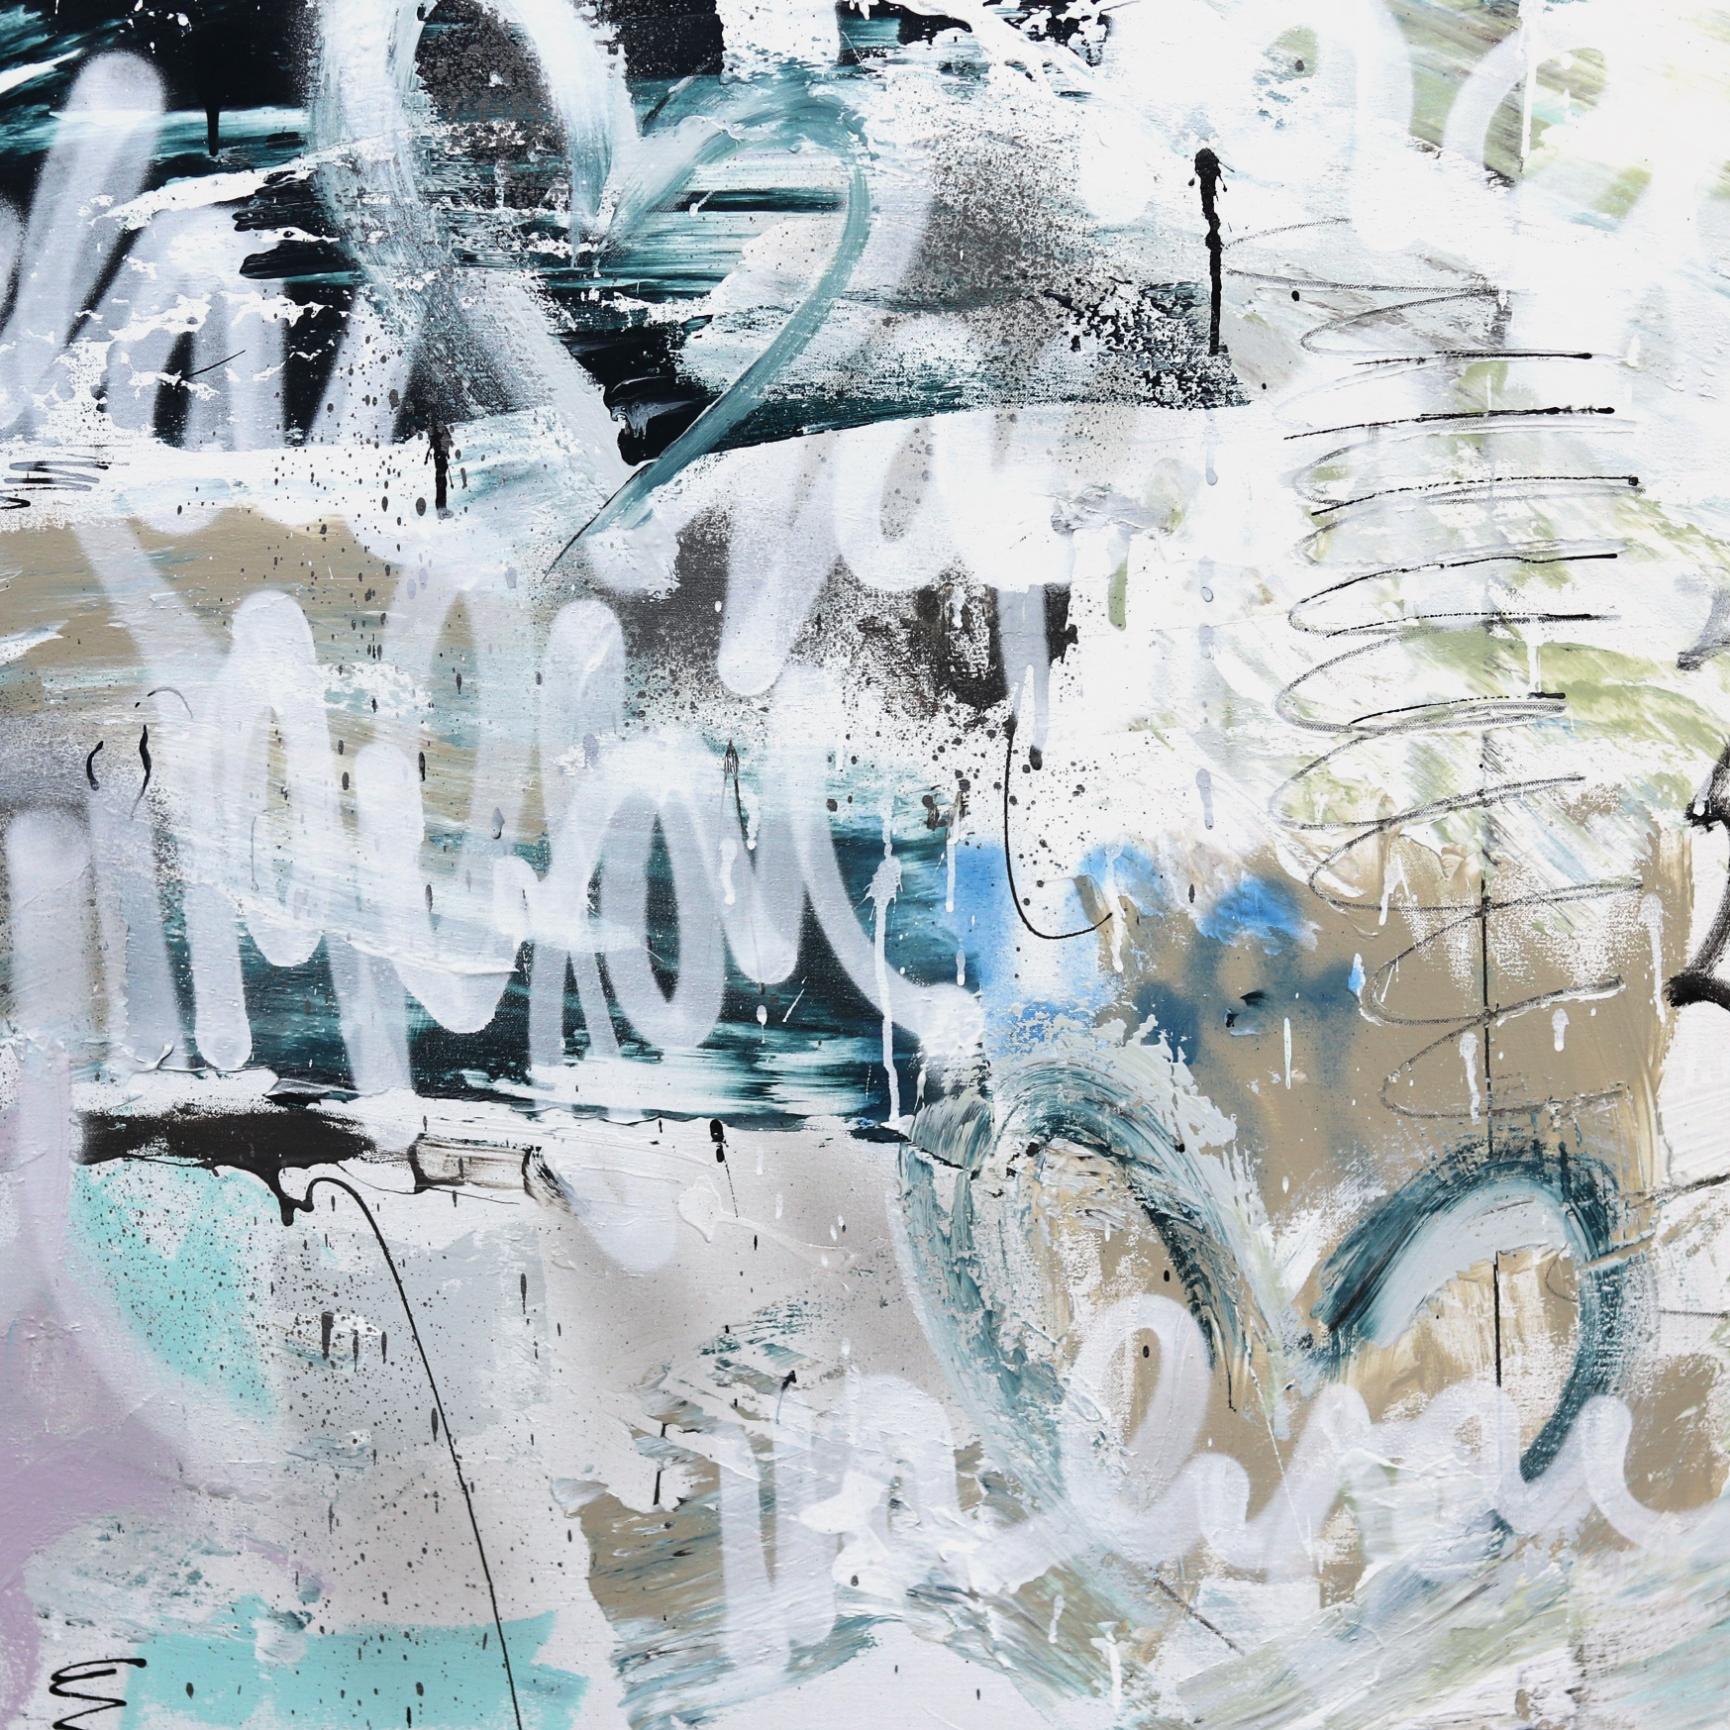 L'artiste de Los Angeles Amber Goldhammer peint des compositions abstraites spectaculaires à l'acrylique sur toile, avec des coups de pinceau énergiques. Goldhammer utilise ses peintures contemporaines pour exprimer des émotions proches de la poésie